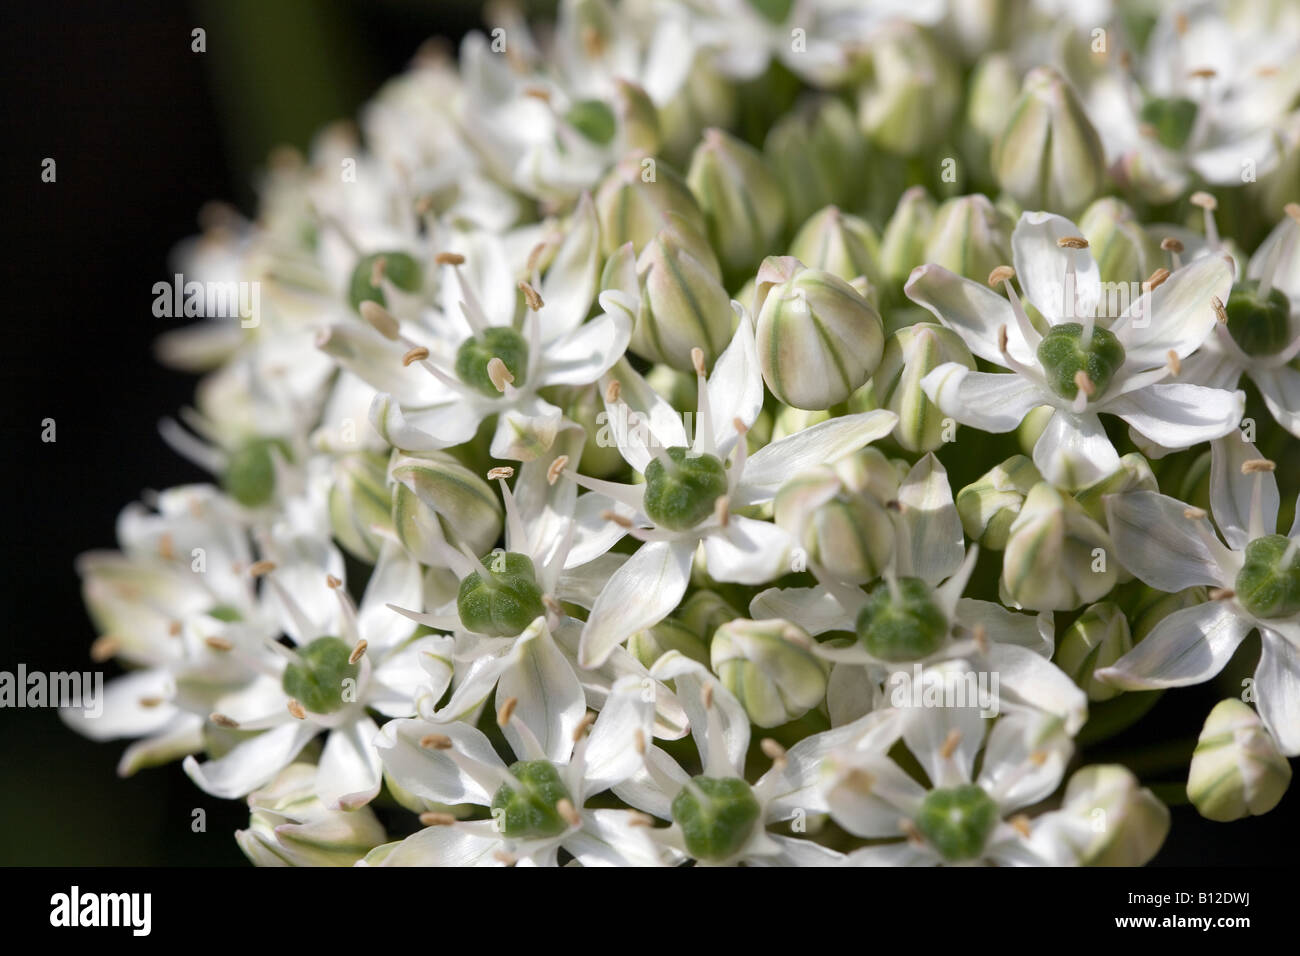 Allium Nigrum flower head. Stock Photo